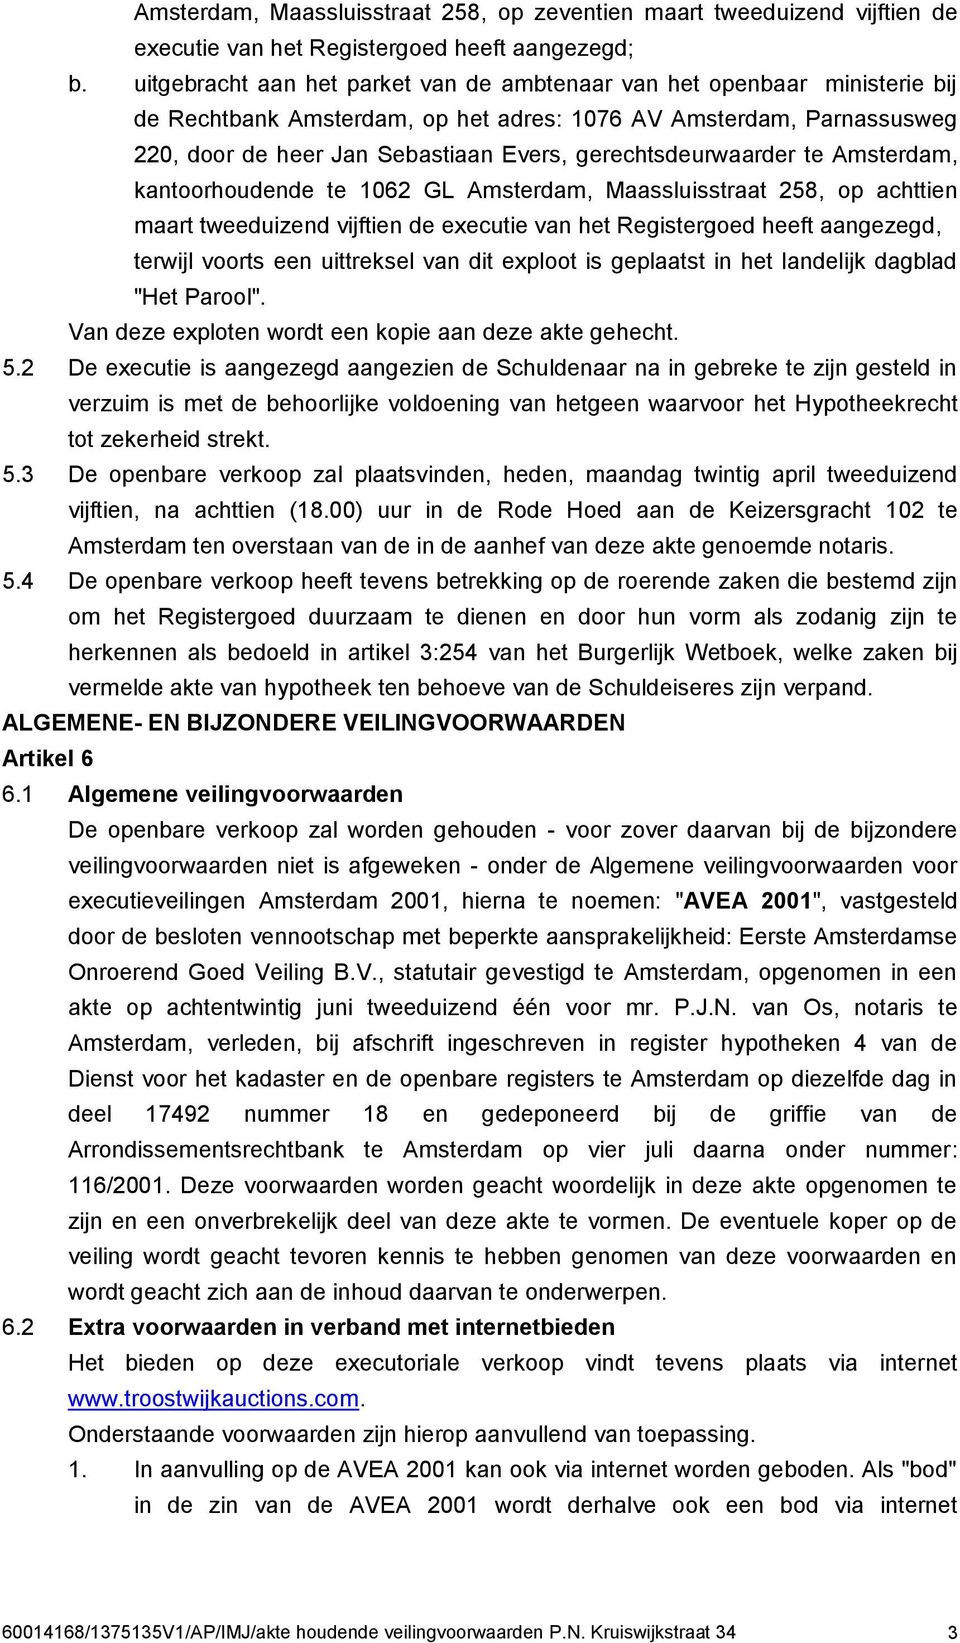 gerechtsdeurwaarder te Amsterdam, kantoorhoudende te 1062 GL Amsterdam, Maassluisstraat 258, op achttien maart tweeduizend vijftien de executie van het Registergoed heeft aangezegd, terwijl voorts